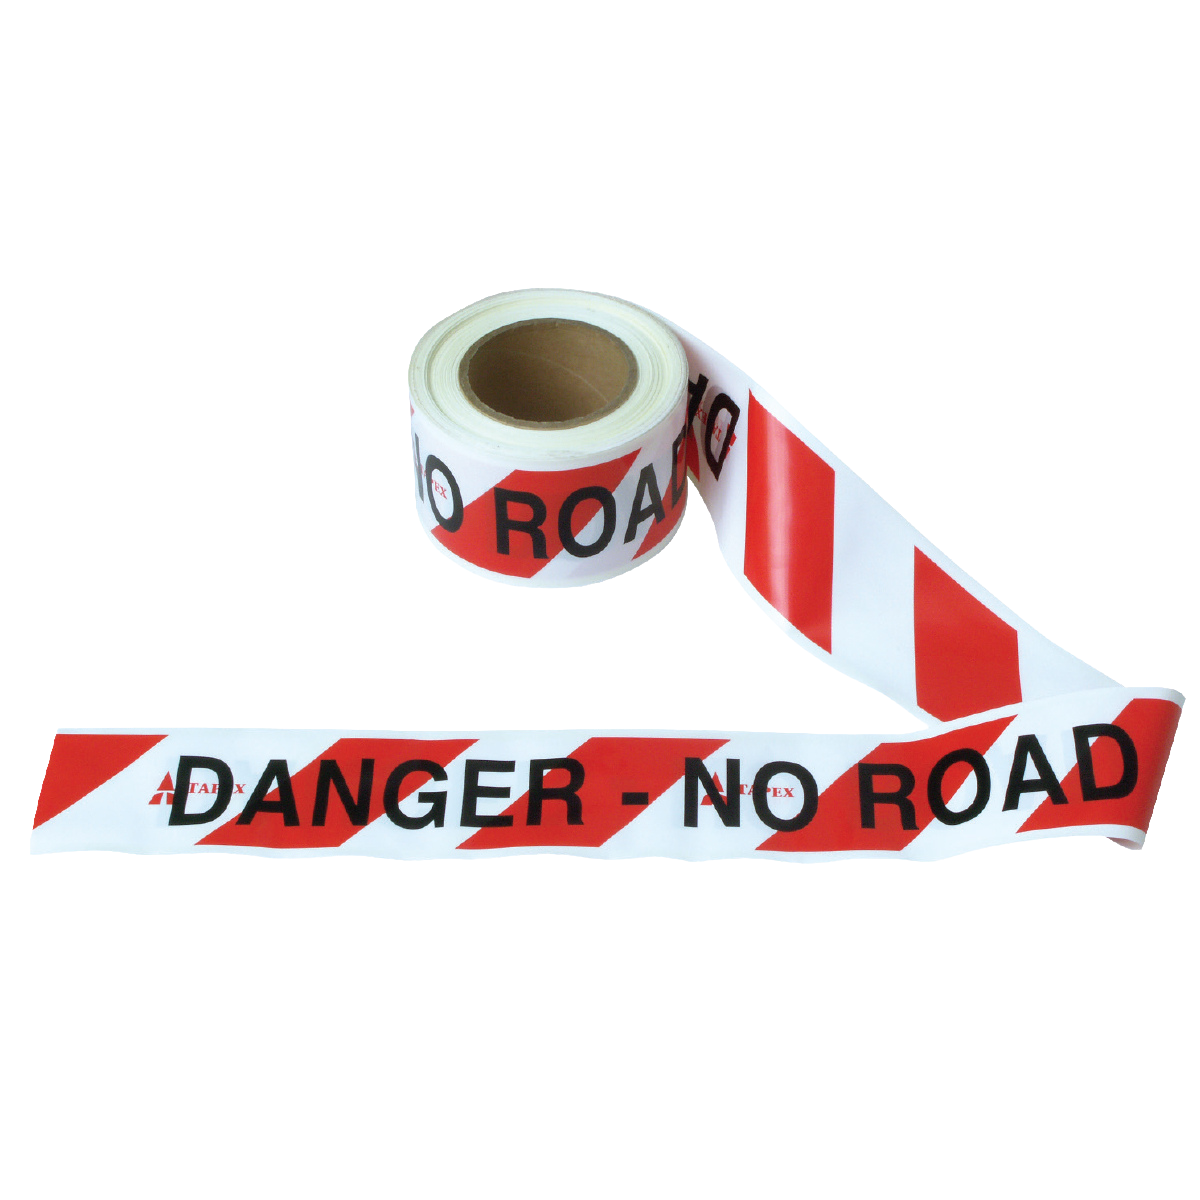 'Danger: No Road' Barrier Tape